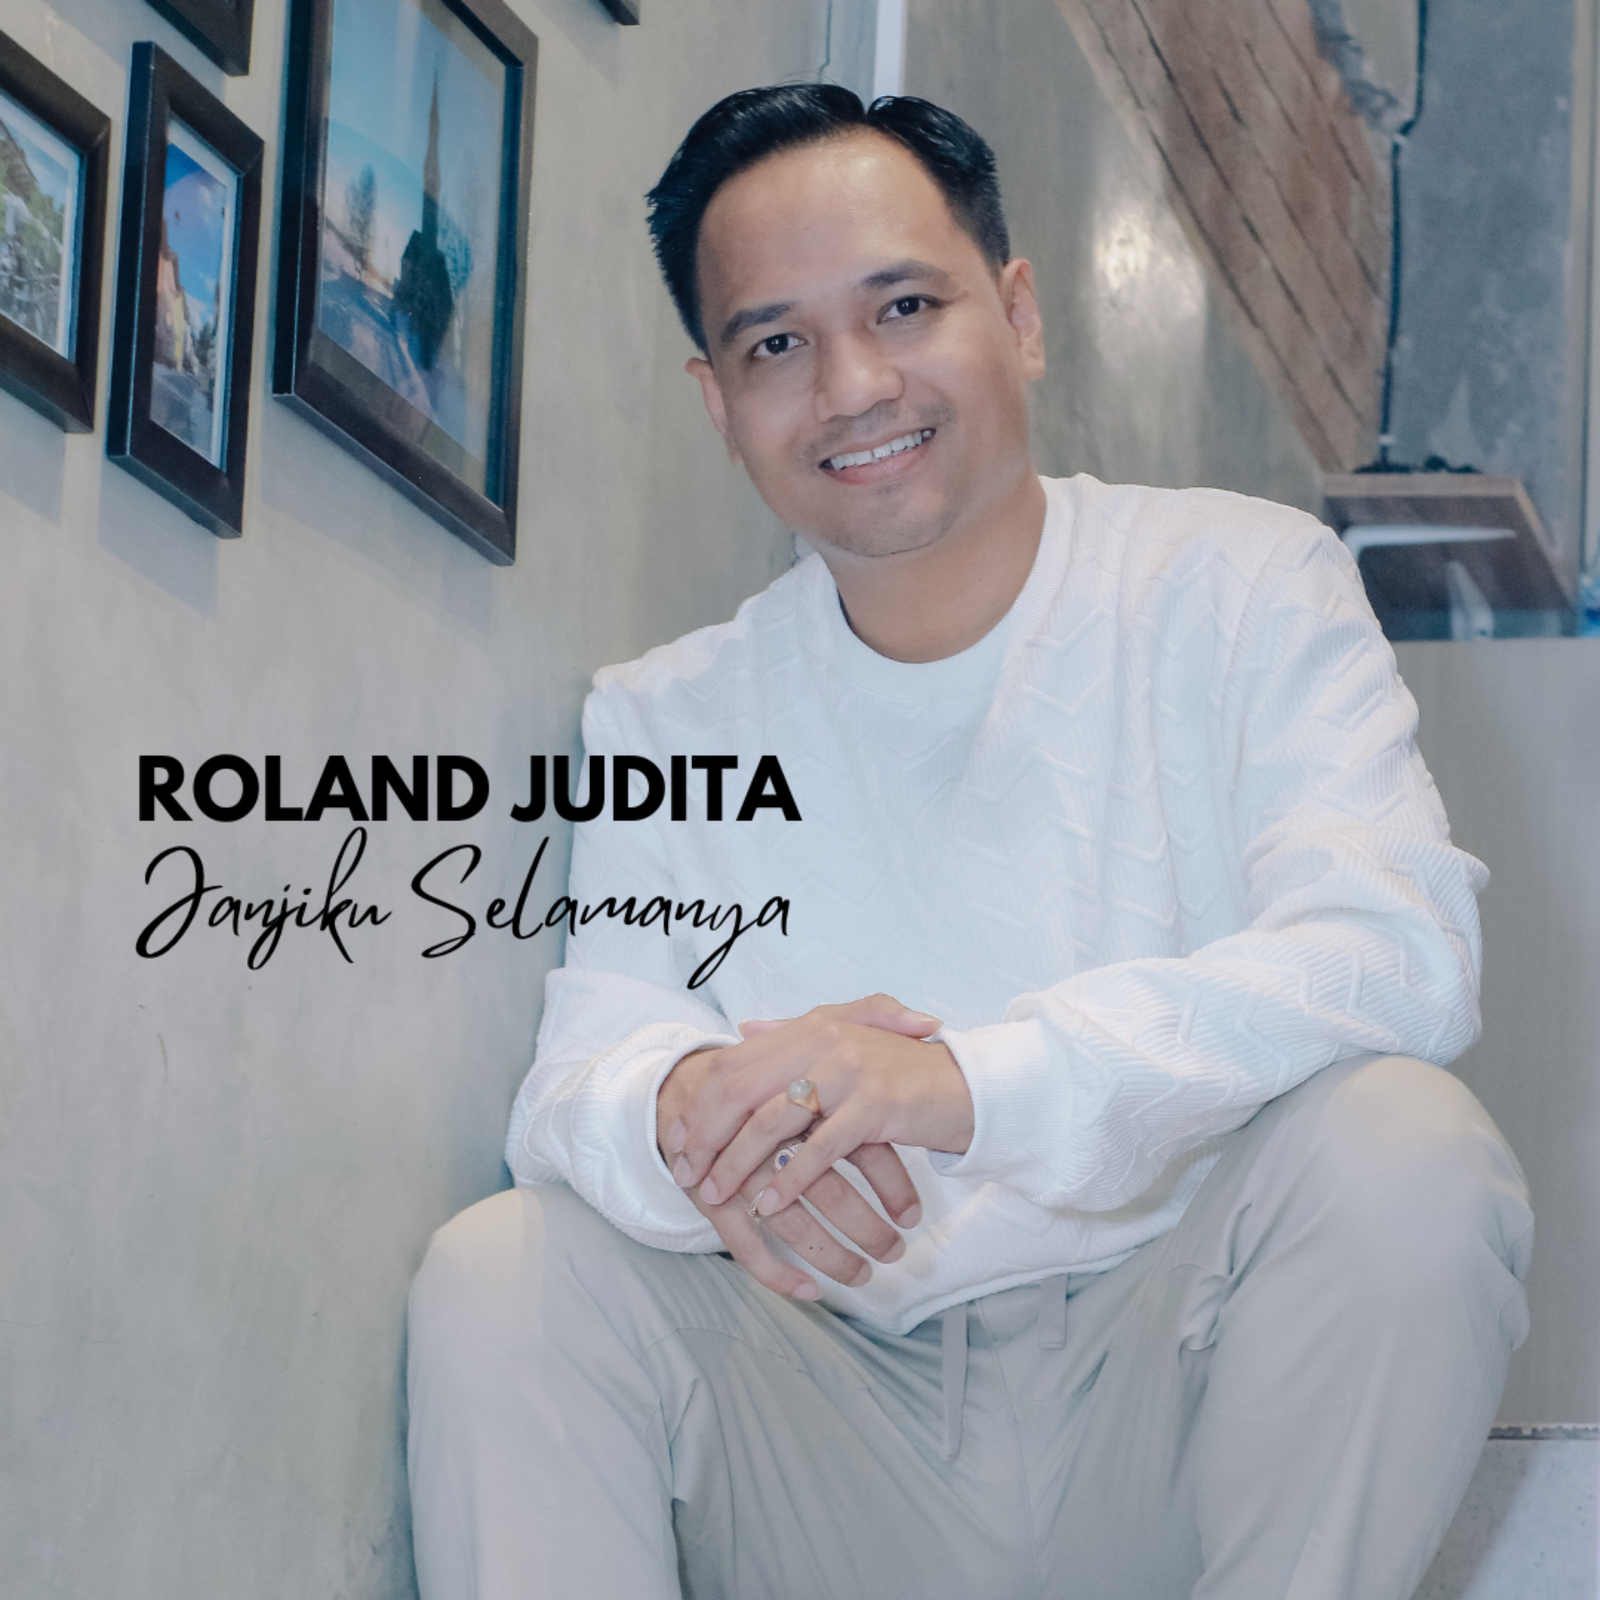 Roland Judita - Janjiku Selamanya (1)